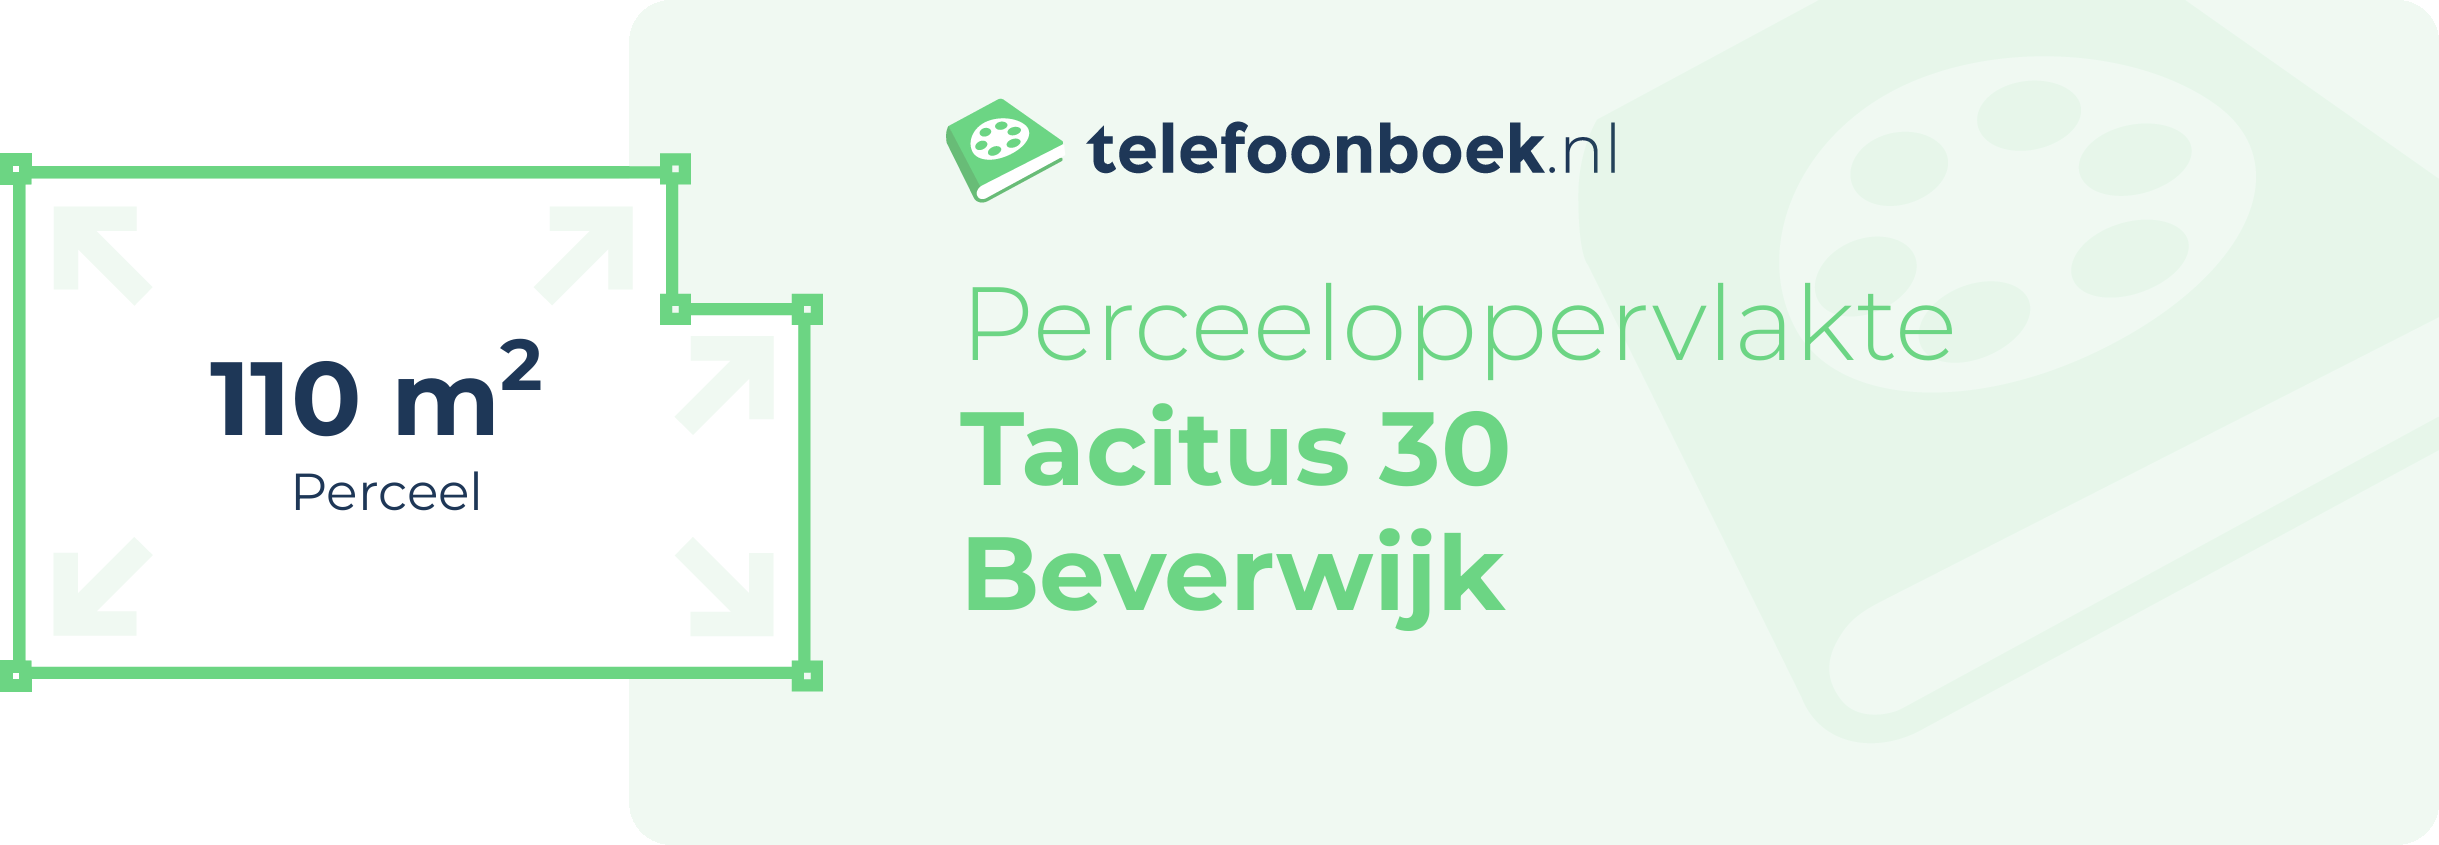 Perceeloppervlakte Tacitus 30 Beverwijk